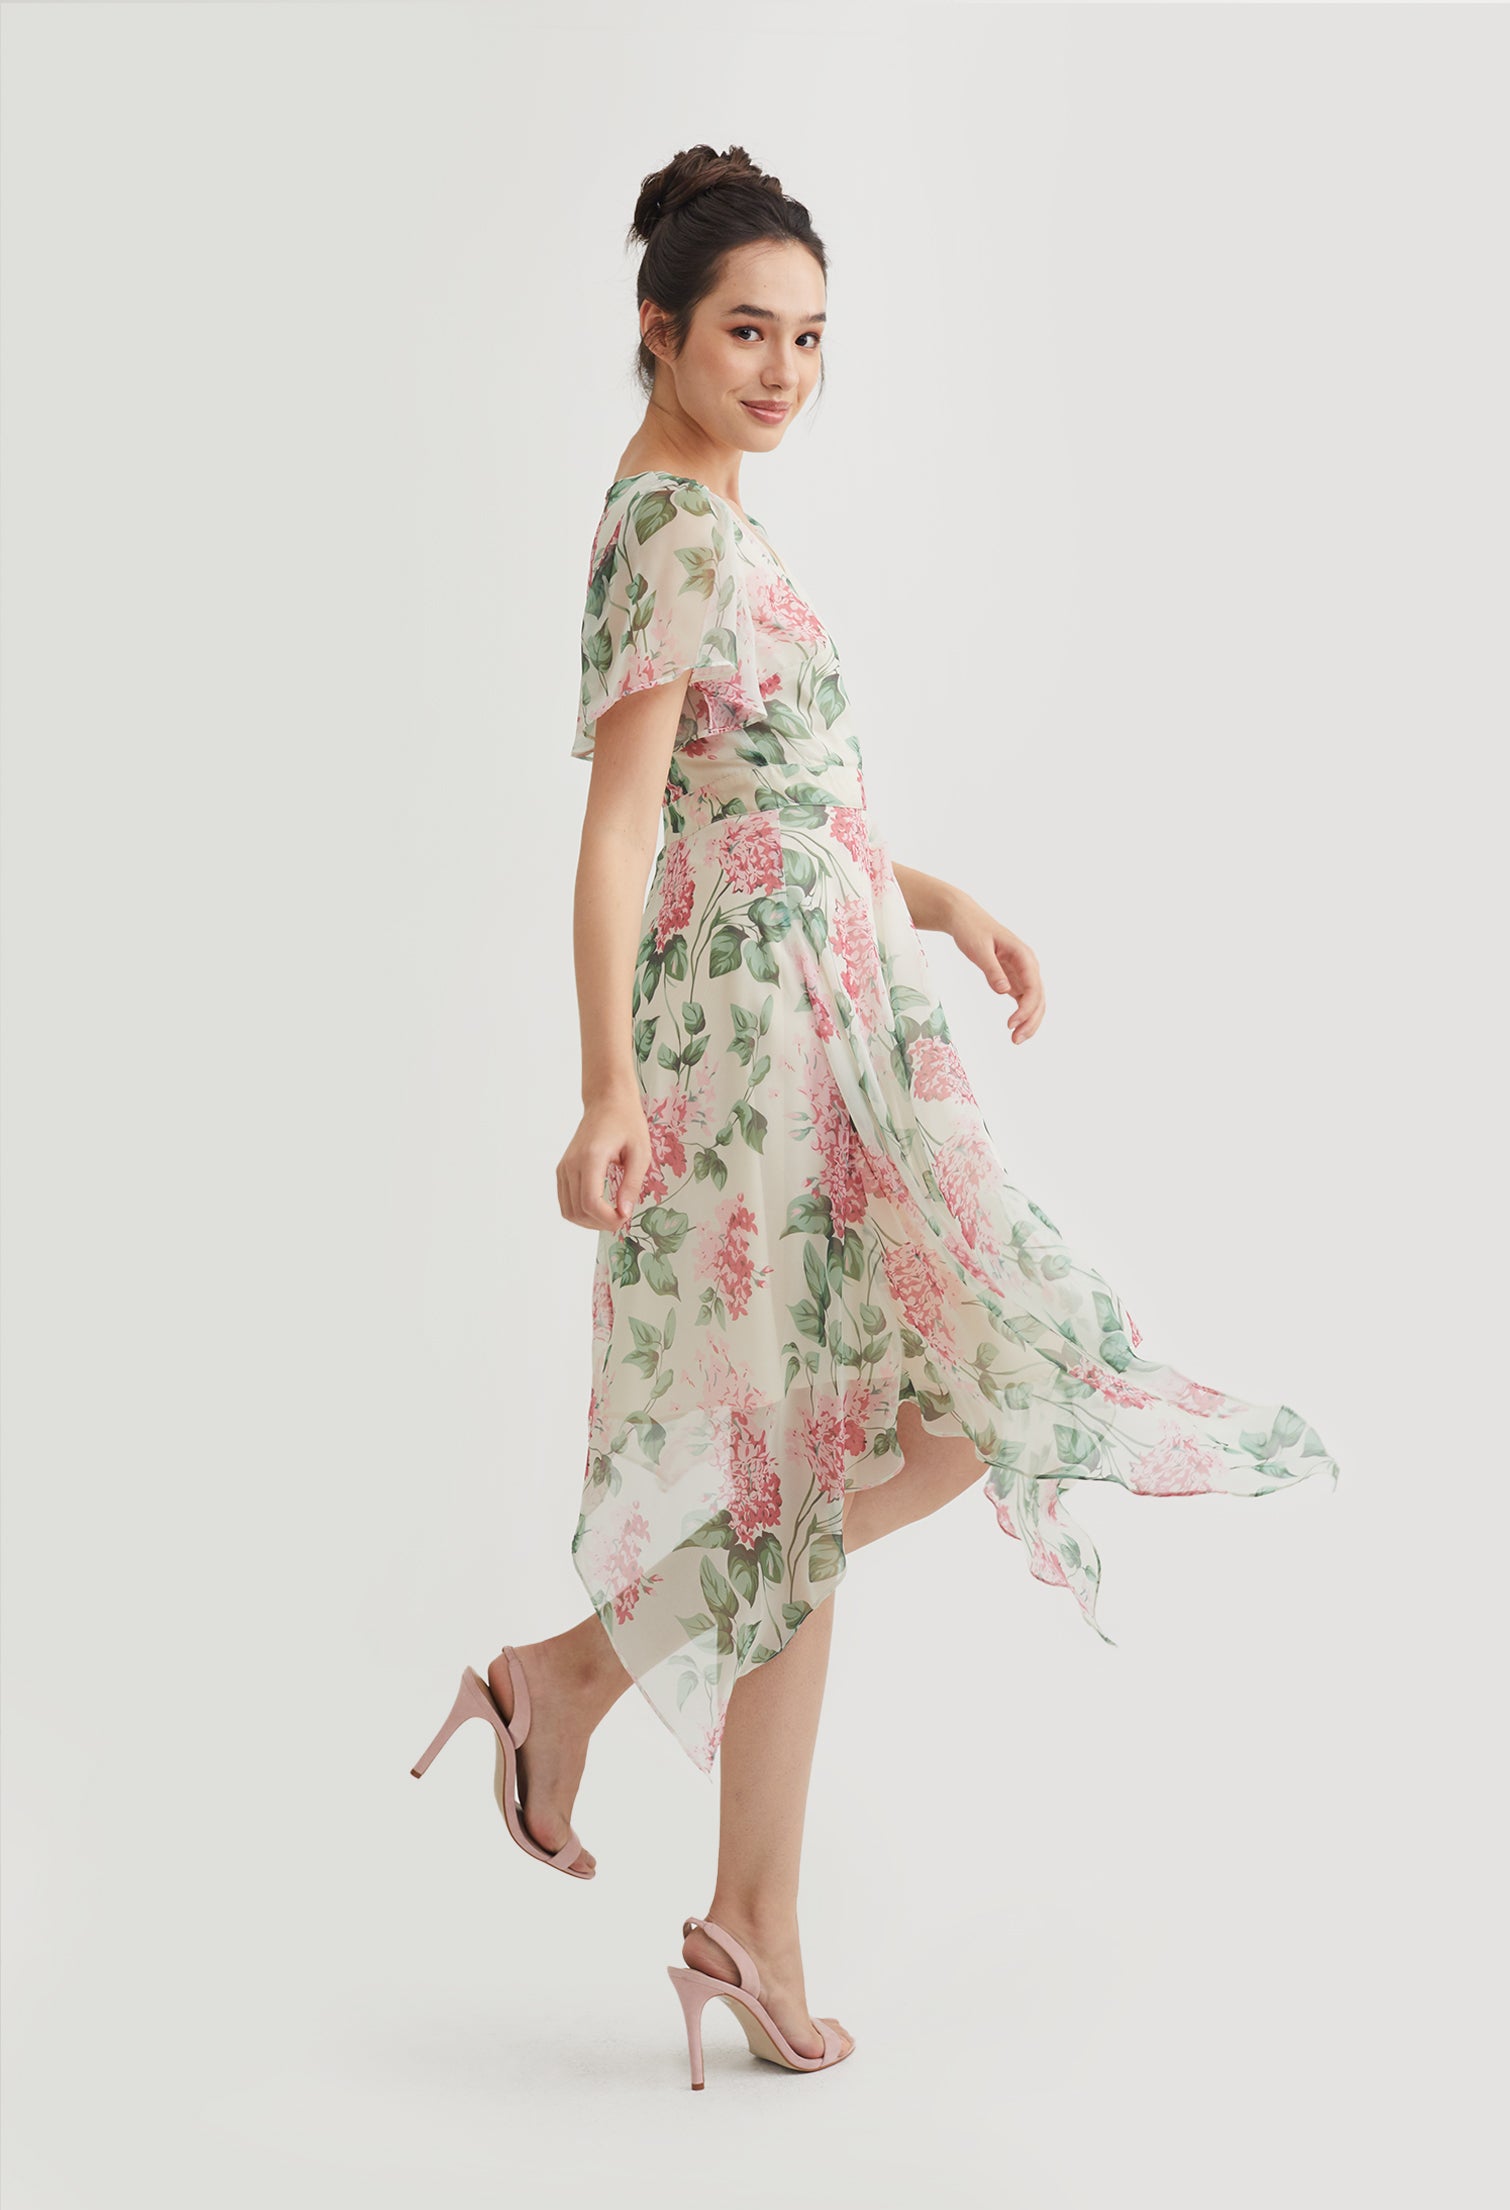 Sweetheart Floral Flowy Dress